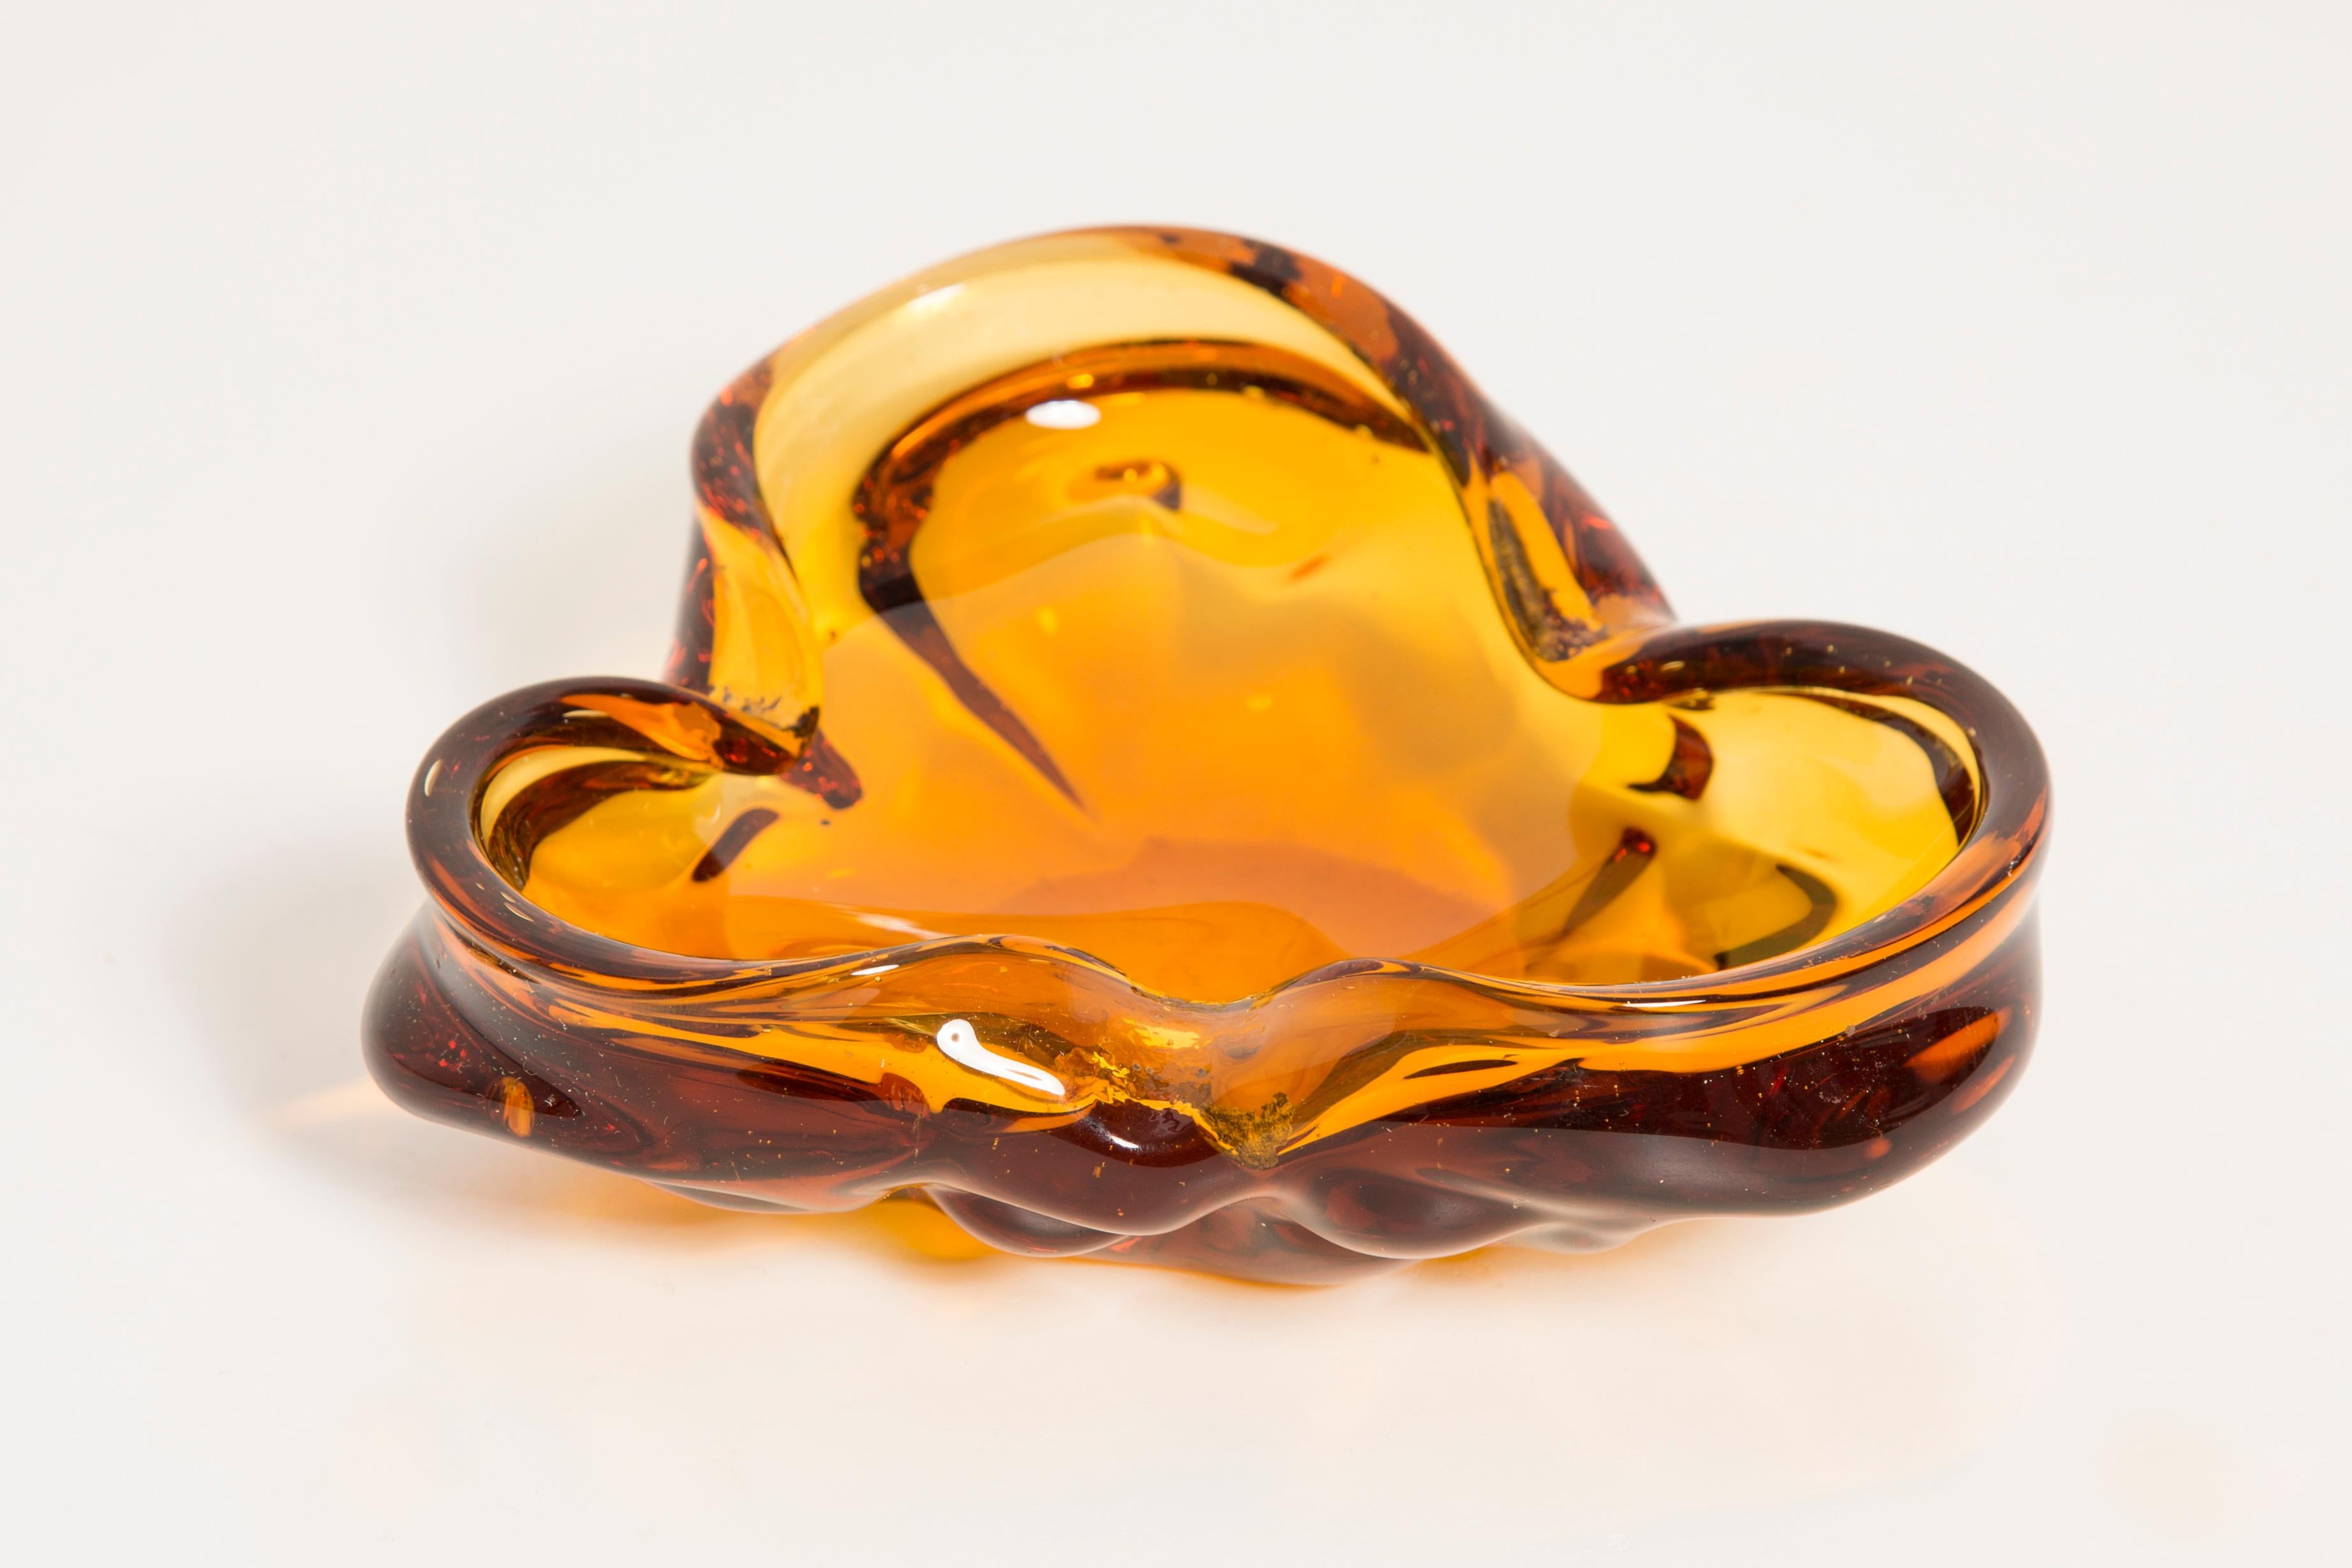 Dieses originelle Aschenbecher-Element aus Glas wurde in den 1970er Jahren in der Lombardei, Italien, entworfen und hergestellt. Er ist in Sommerso-Technik gefertigt und hat eine fantastische facettierte Form. Die leuchtende Farbe macht diesen